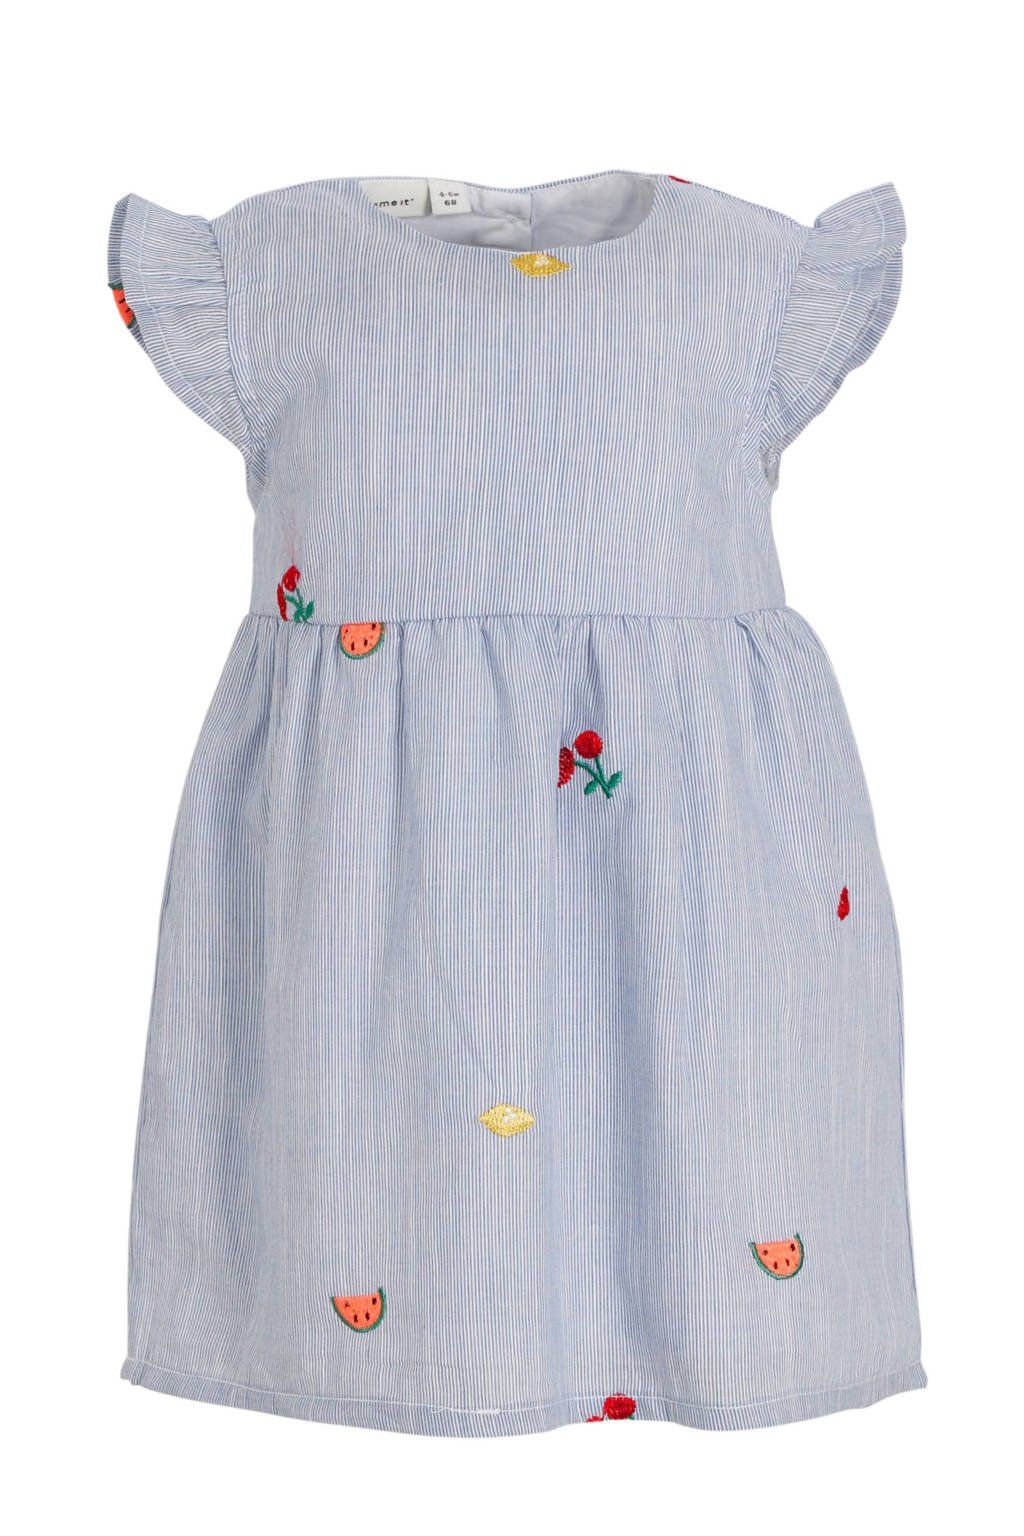 Wonderbaar NAME IT BABY gestreepte jurk Denise blauw/wit | wehkamp IR-54